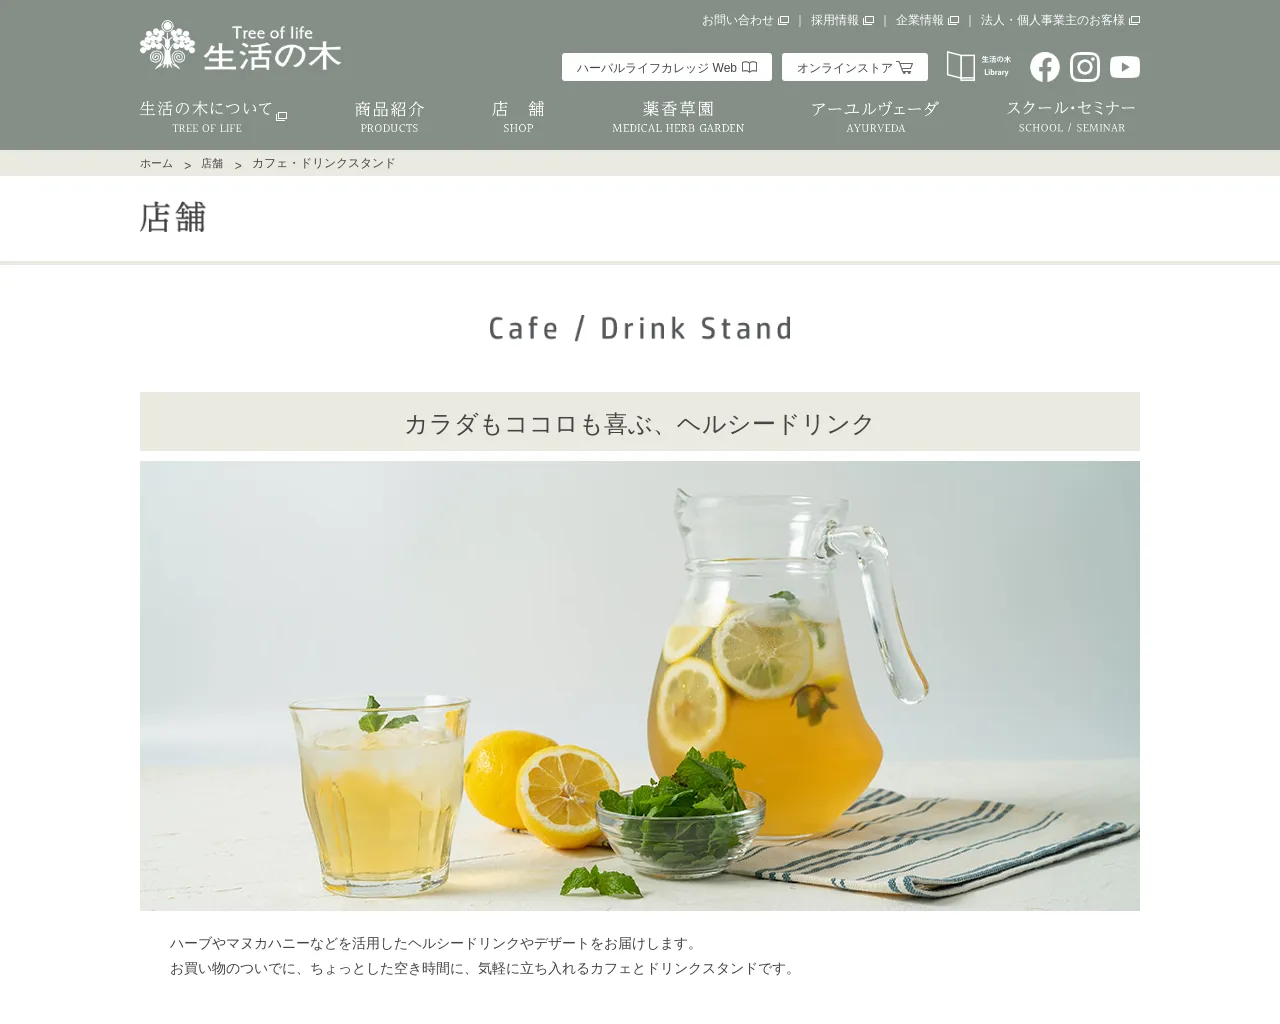 生活の木 アロマカフェ 札幌パセオ店 site